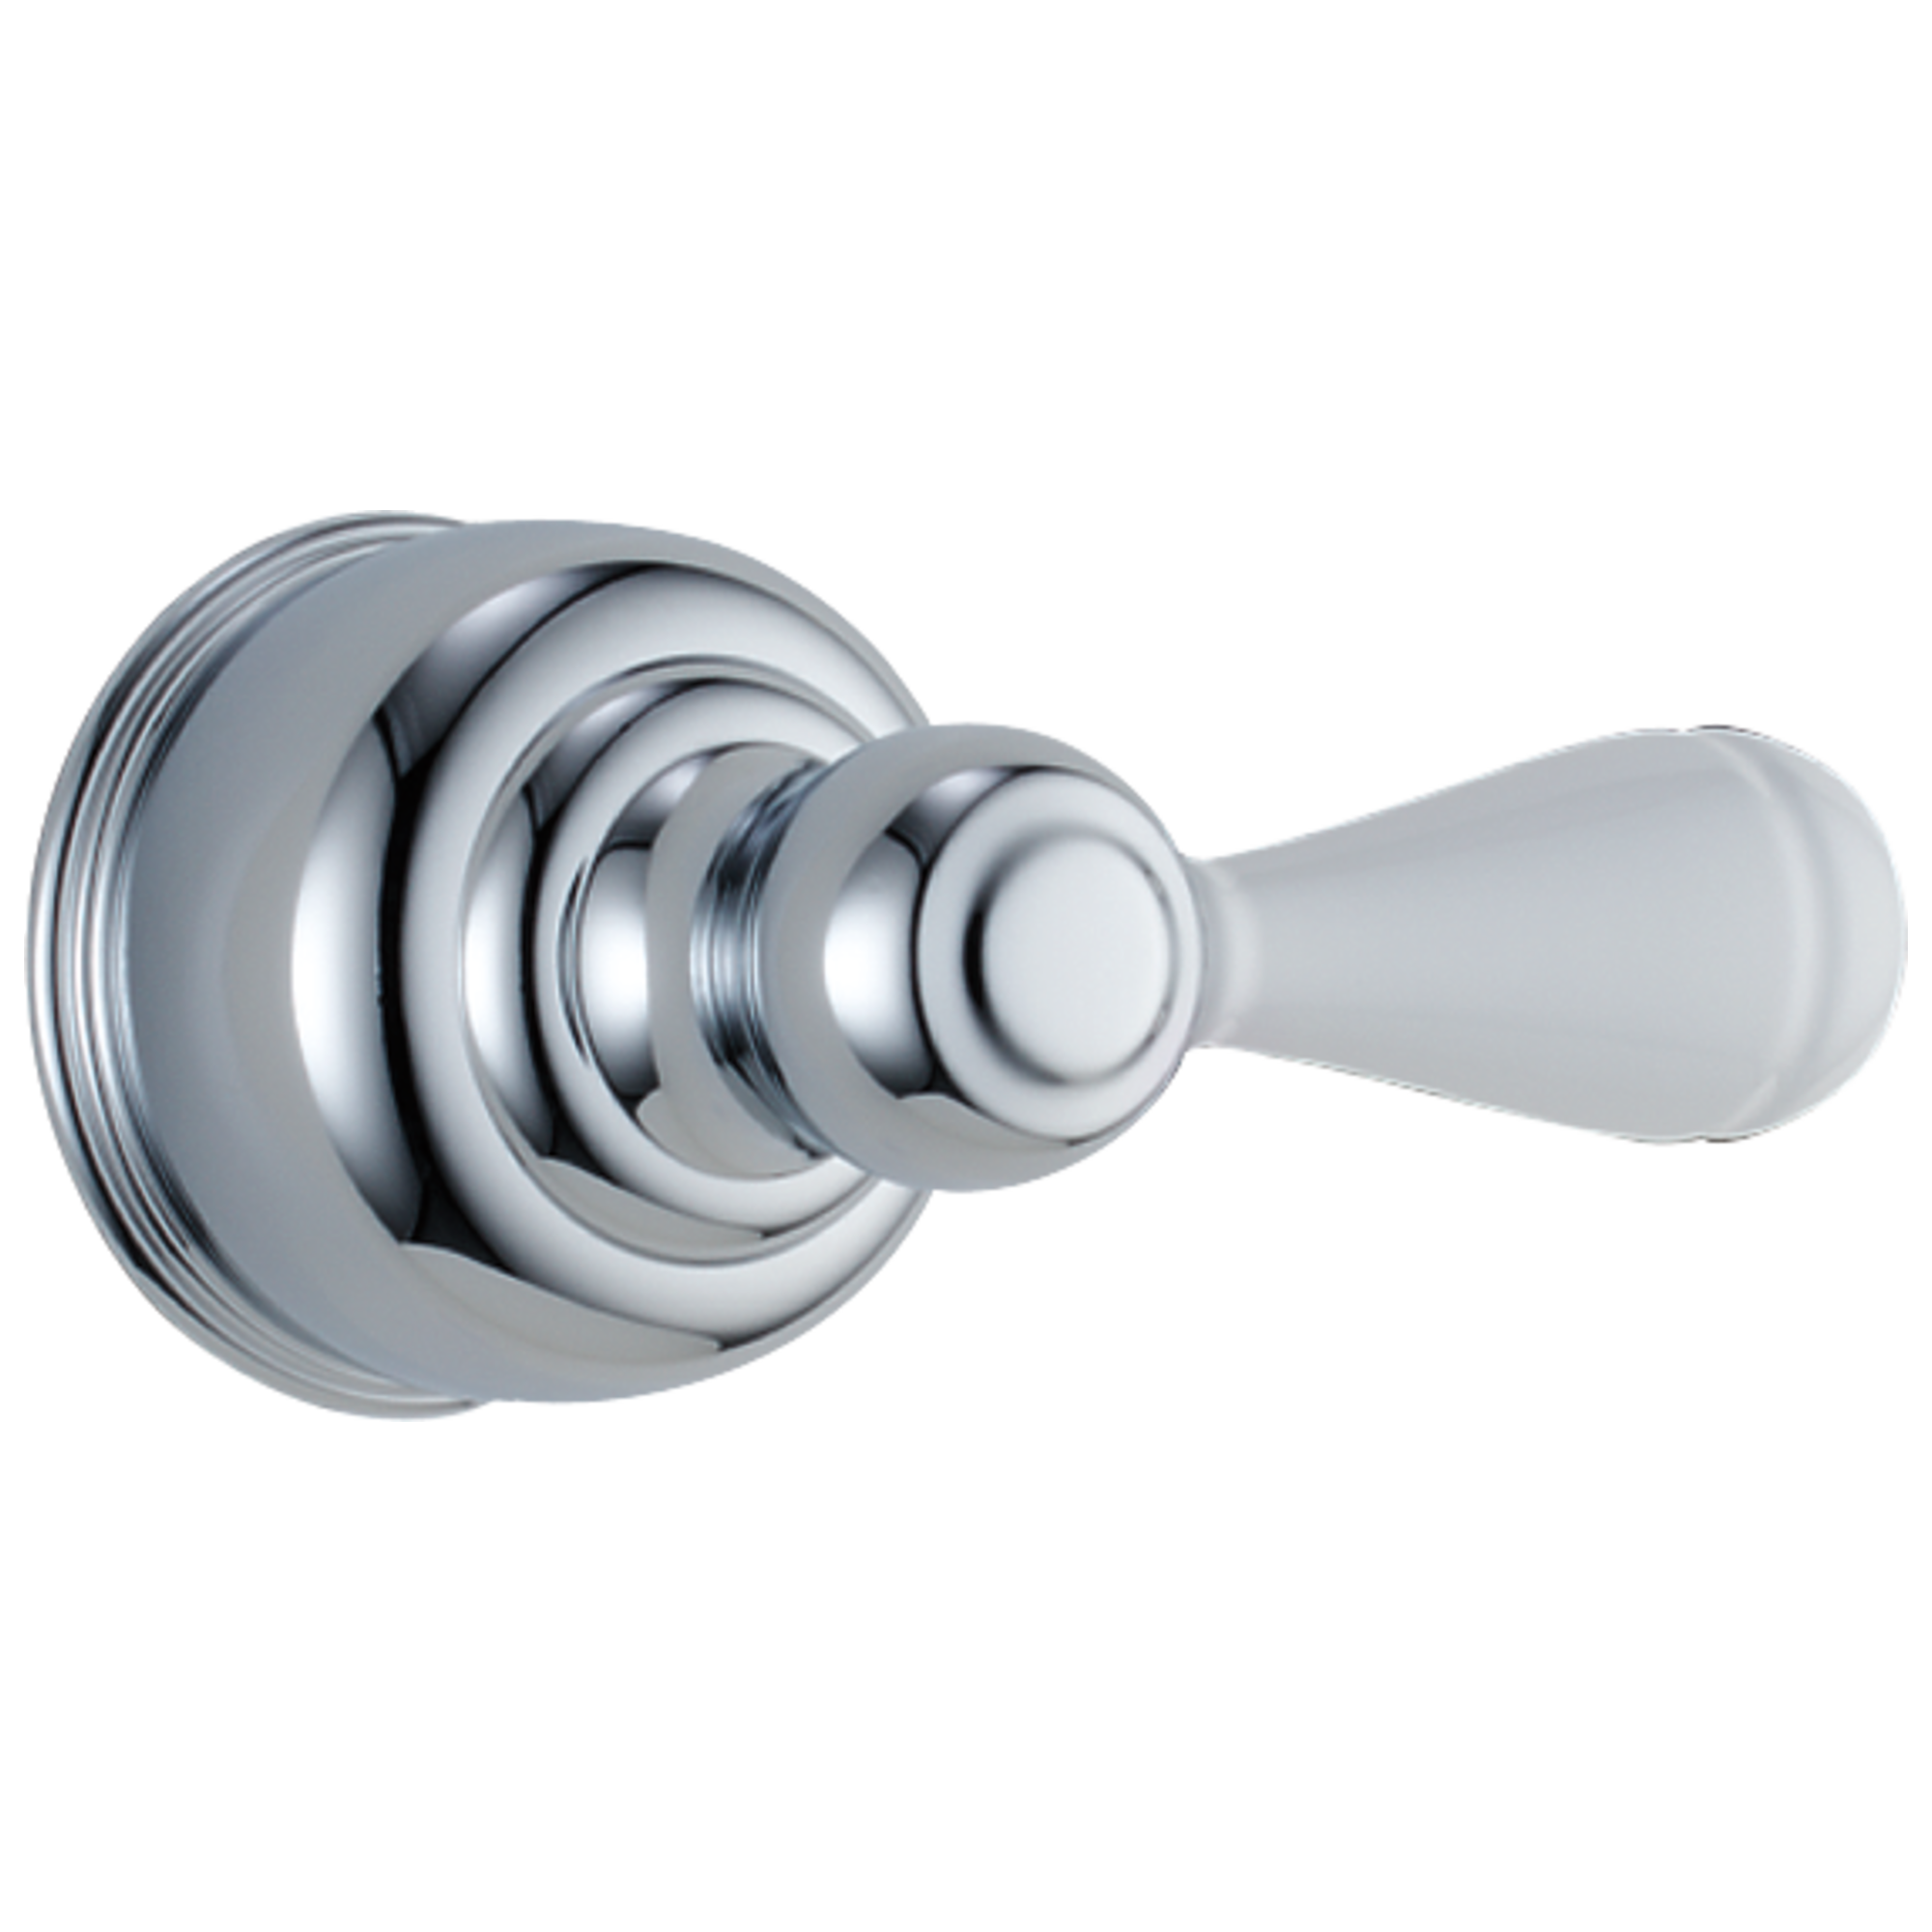 Single Porcelain Cross Handle Kit Delta Faucet H77 Neostyle Chrome